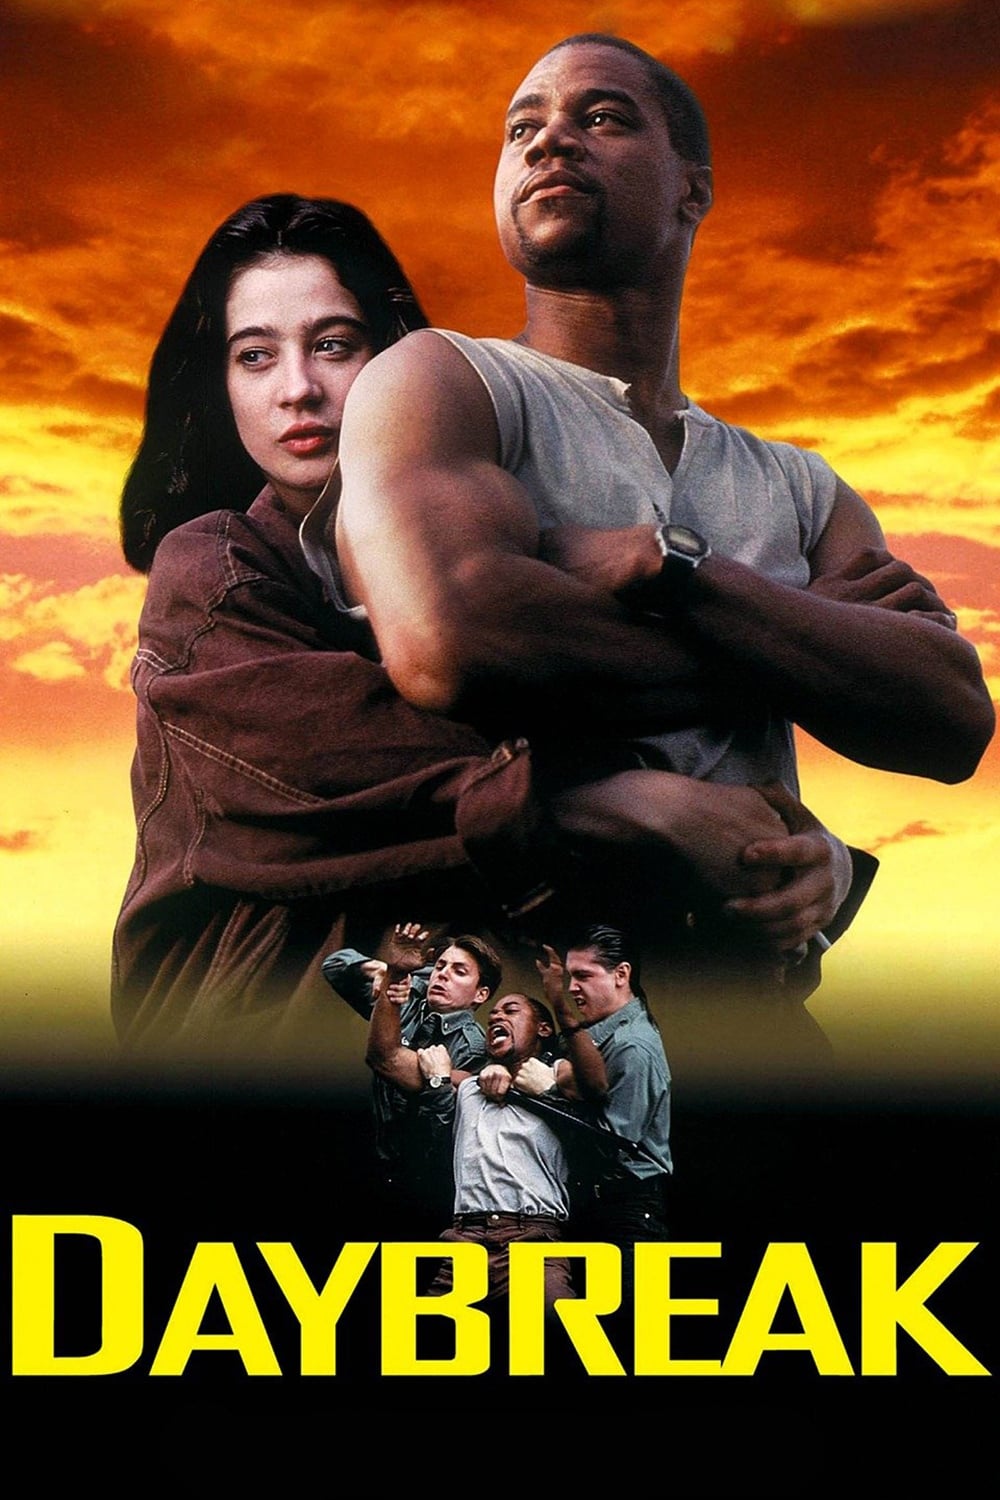 Daybreak (1993)